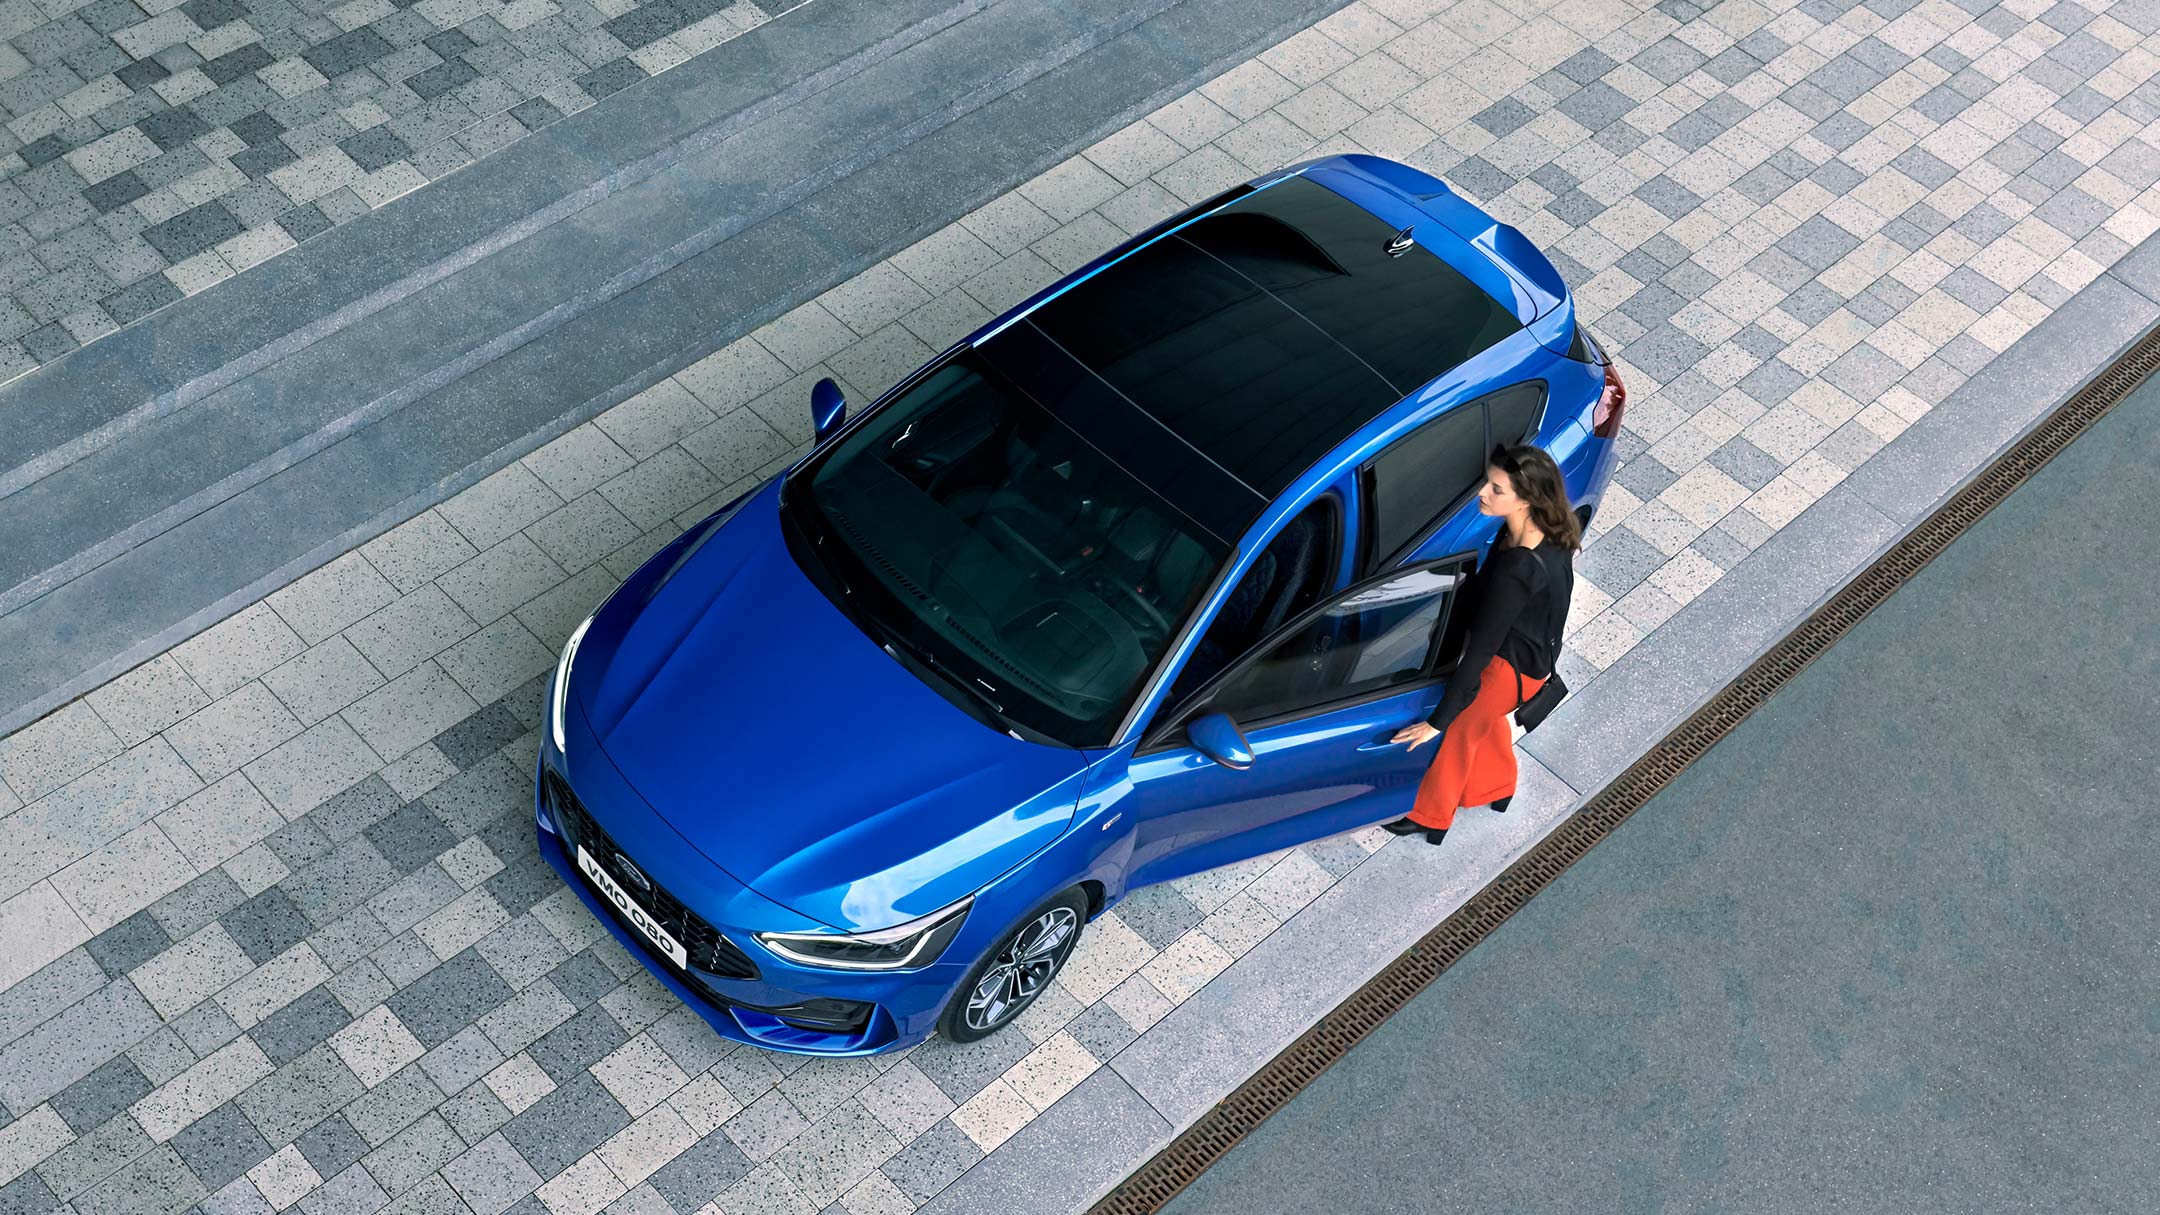 Ford Focus blu. Vista frontale a tre quarti dall’alto del modello con tetto panoramico apribile.